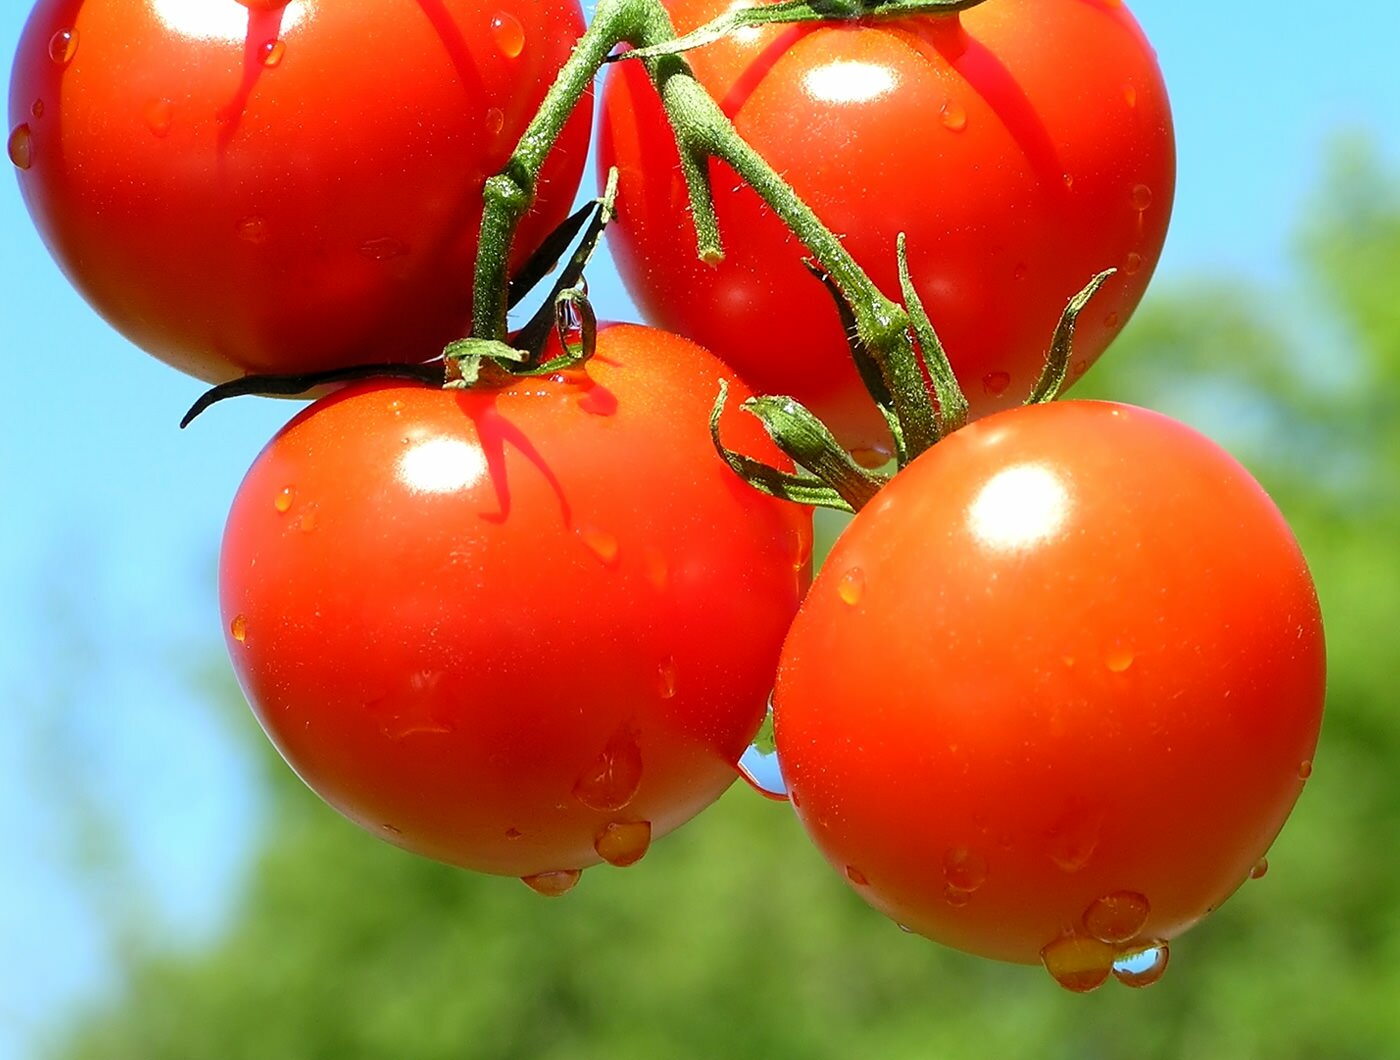 В тепличных условиях томат Красным-красно может дать рекордный урожай